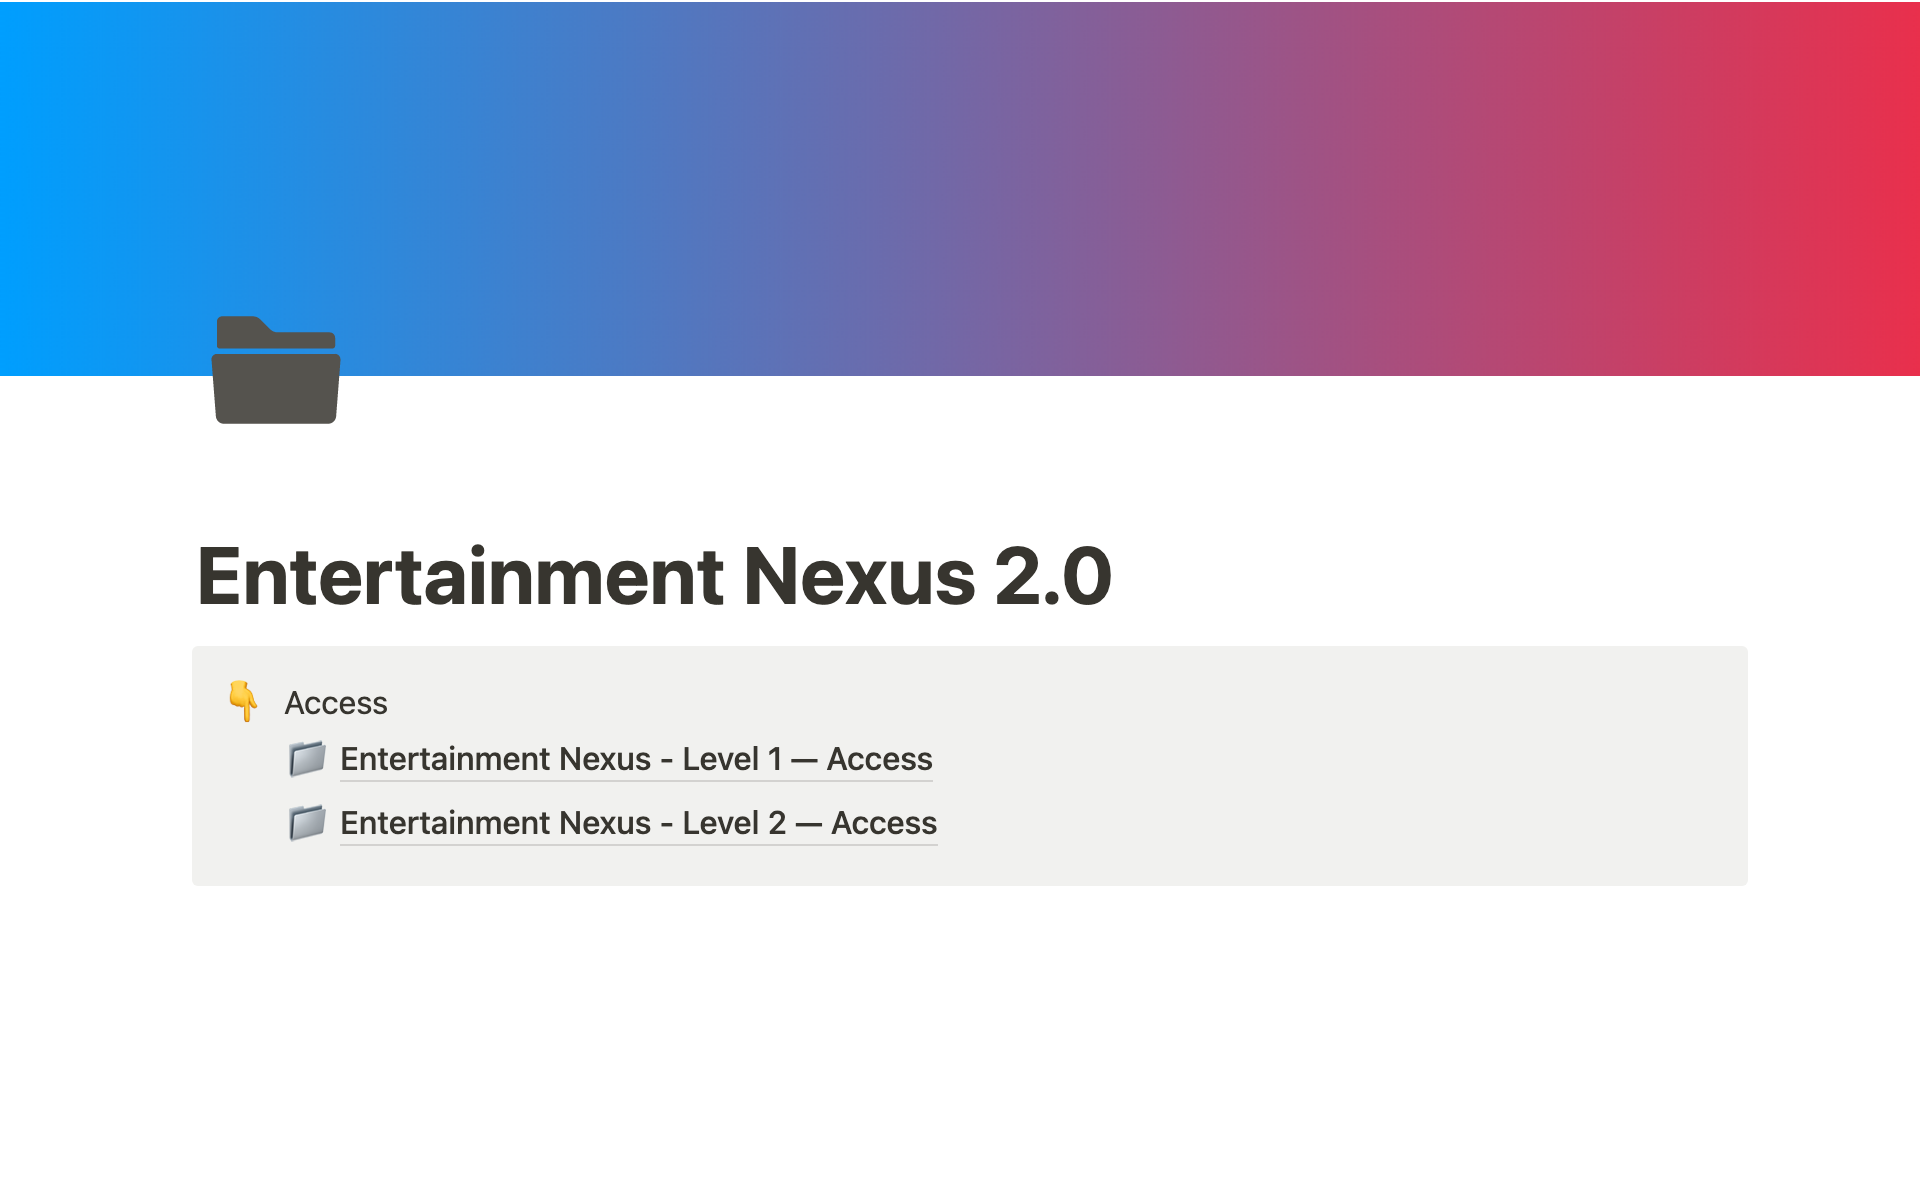 Aperçu du modèle de Entertainment Nexus